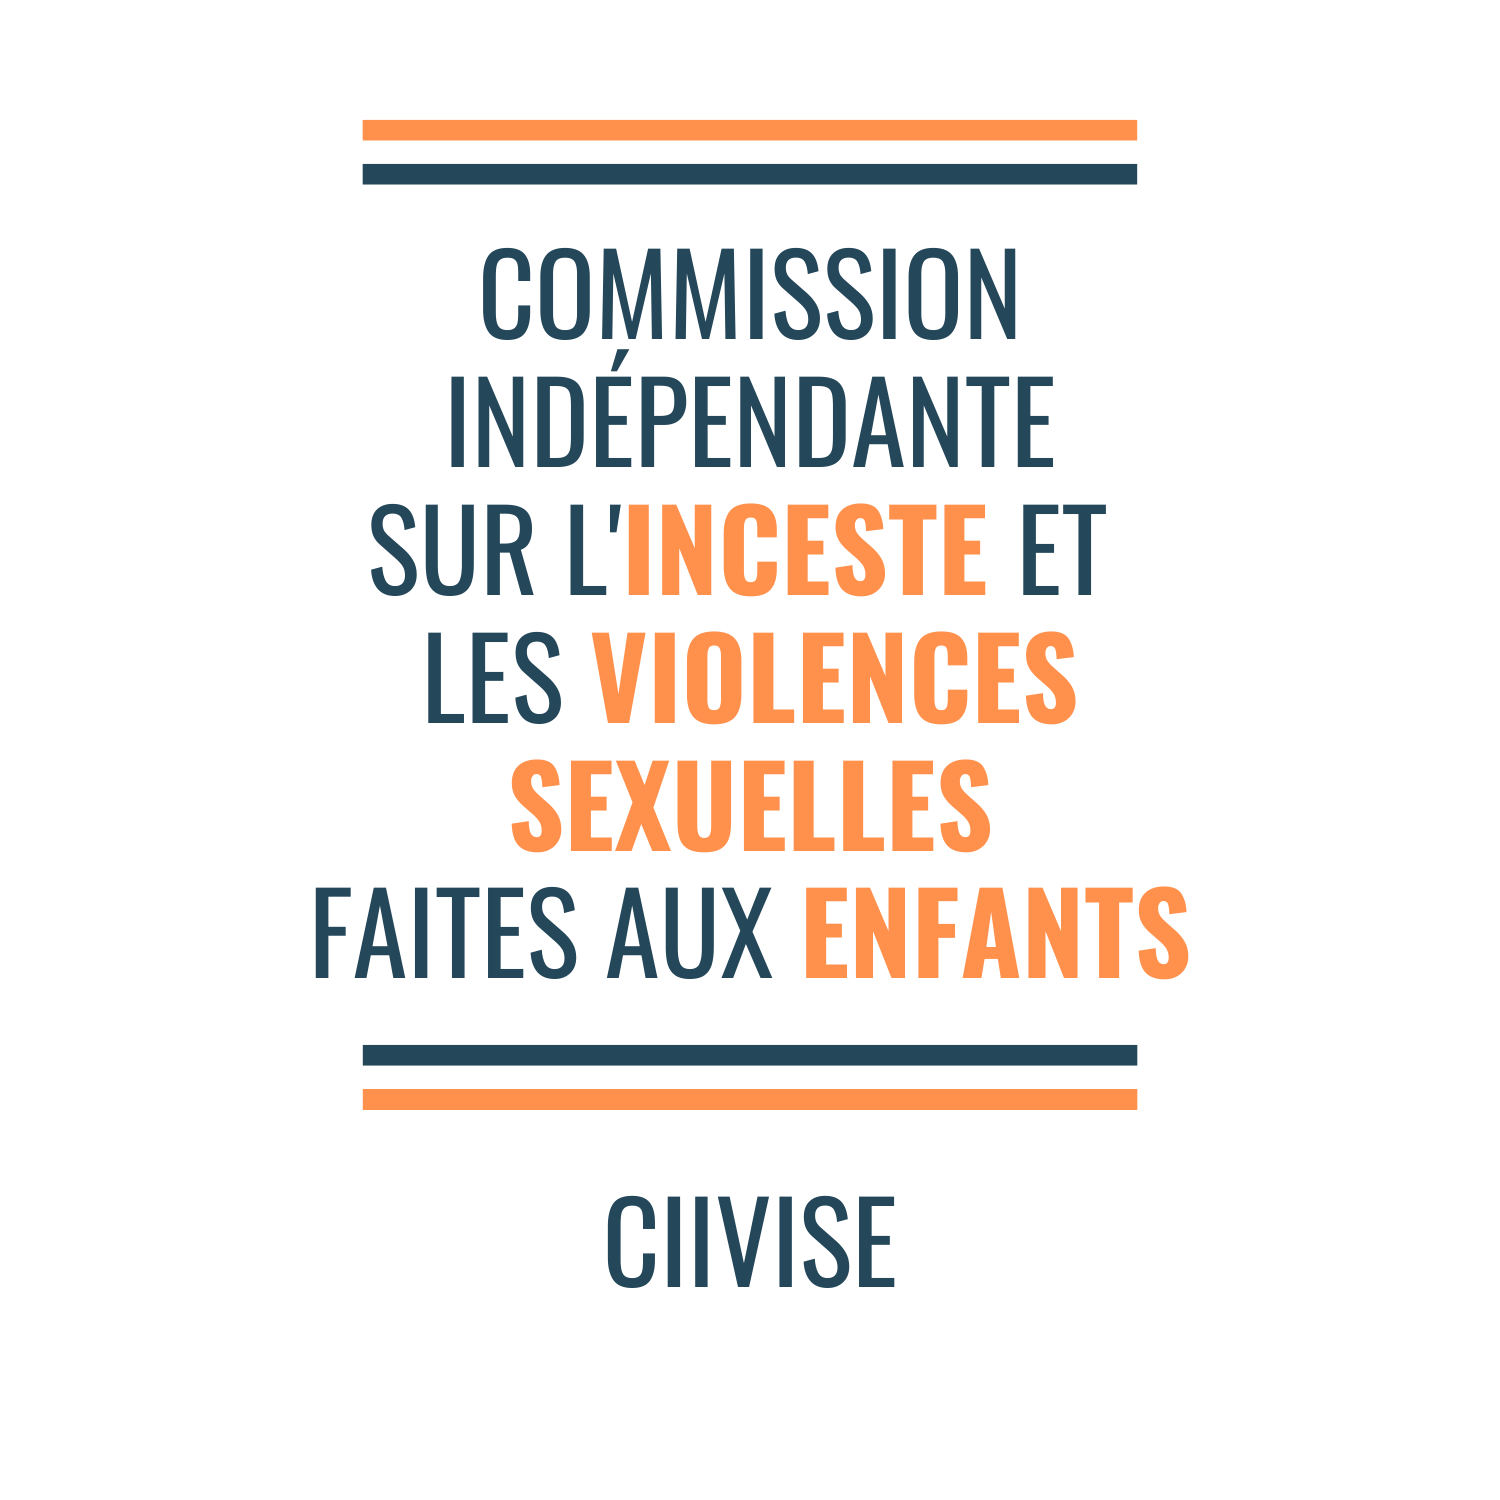 Commission Indépendante sur l’Inceste et les Violences sexuelles faites aux enfants (CIIVISE)